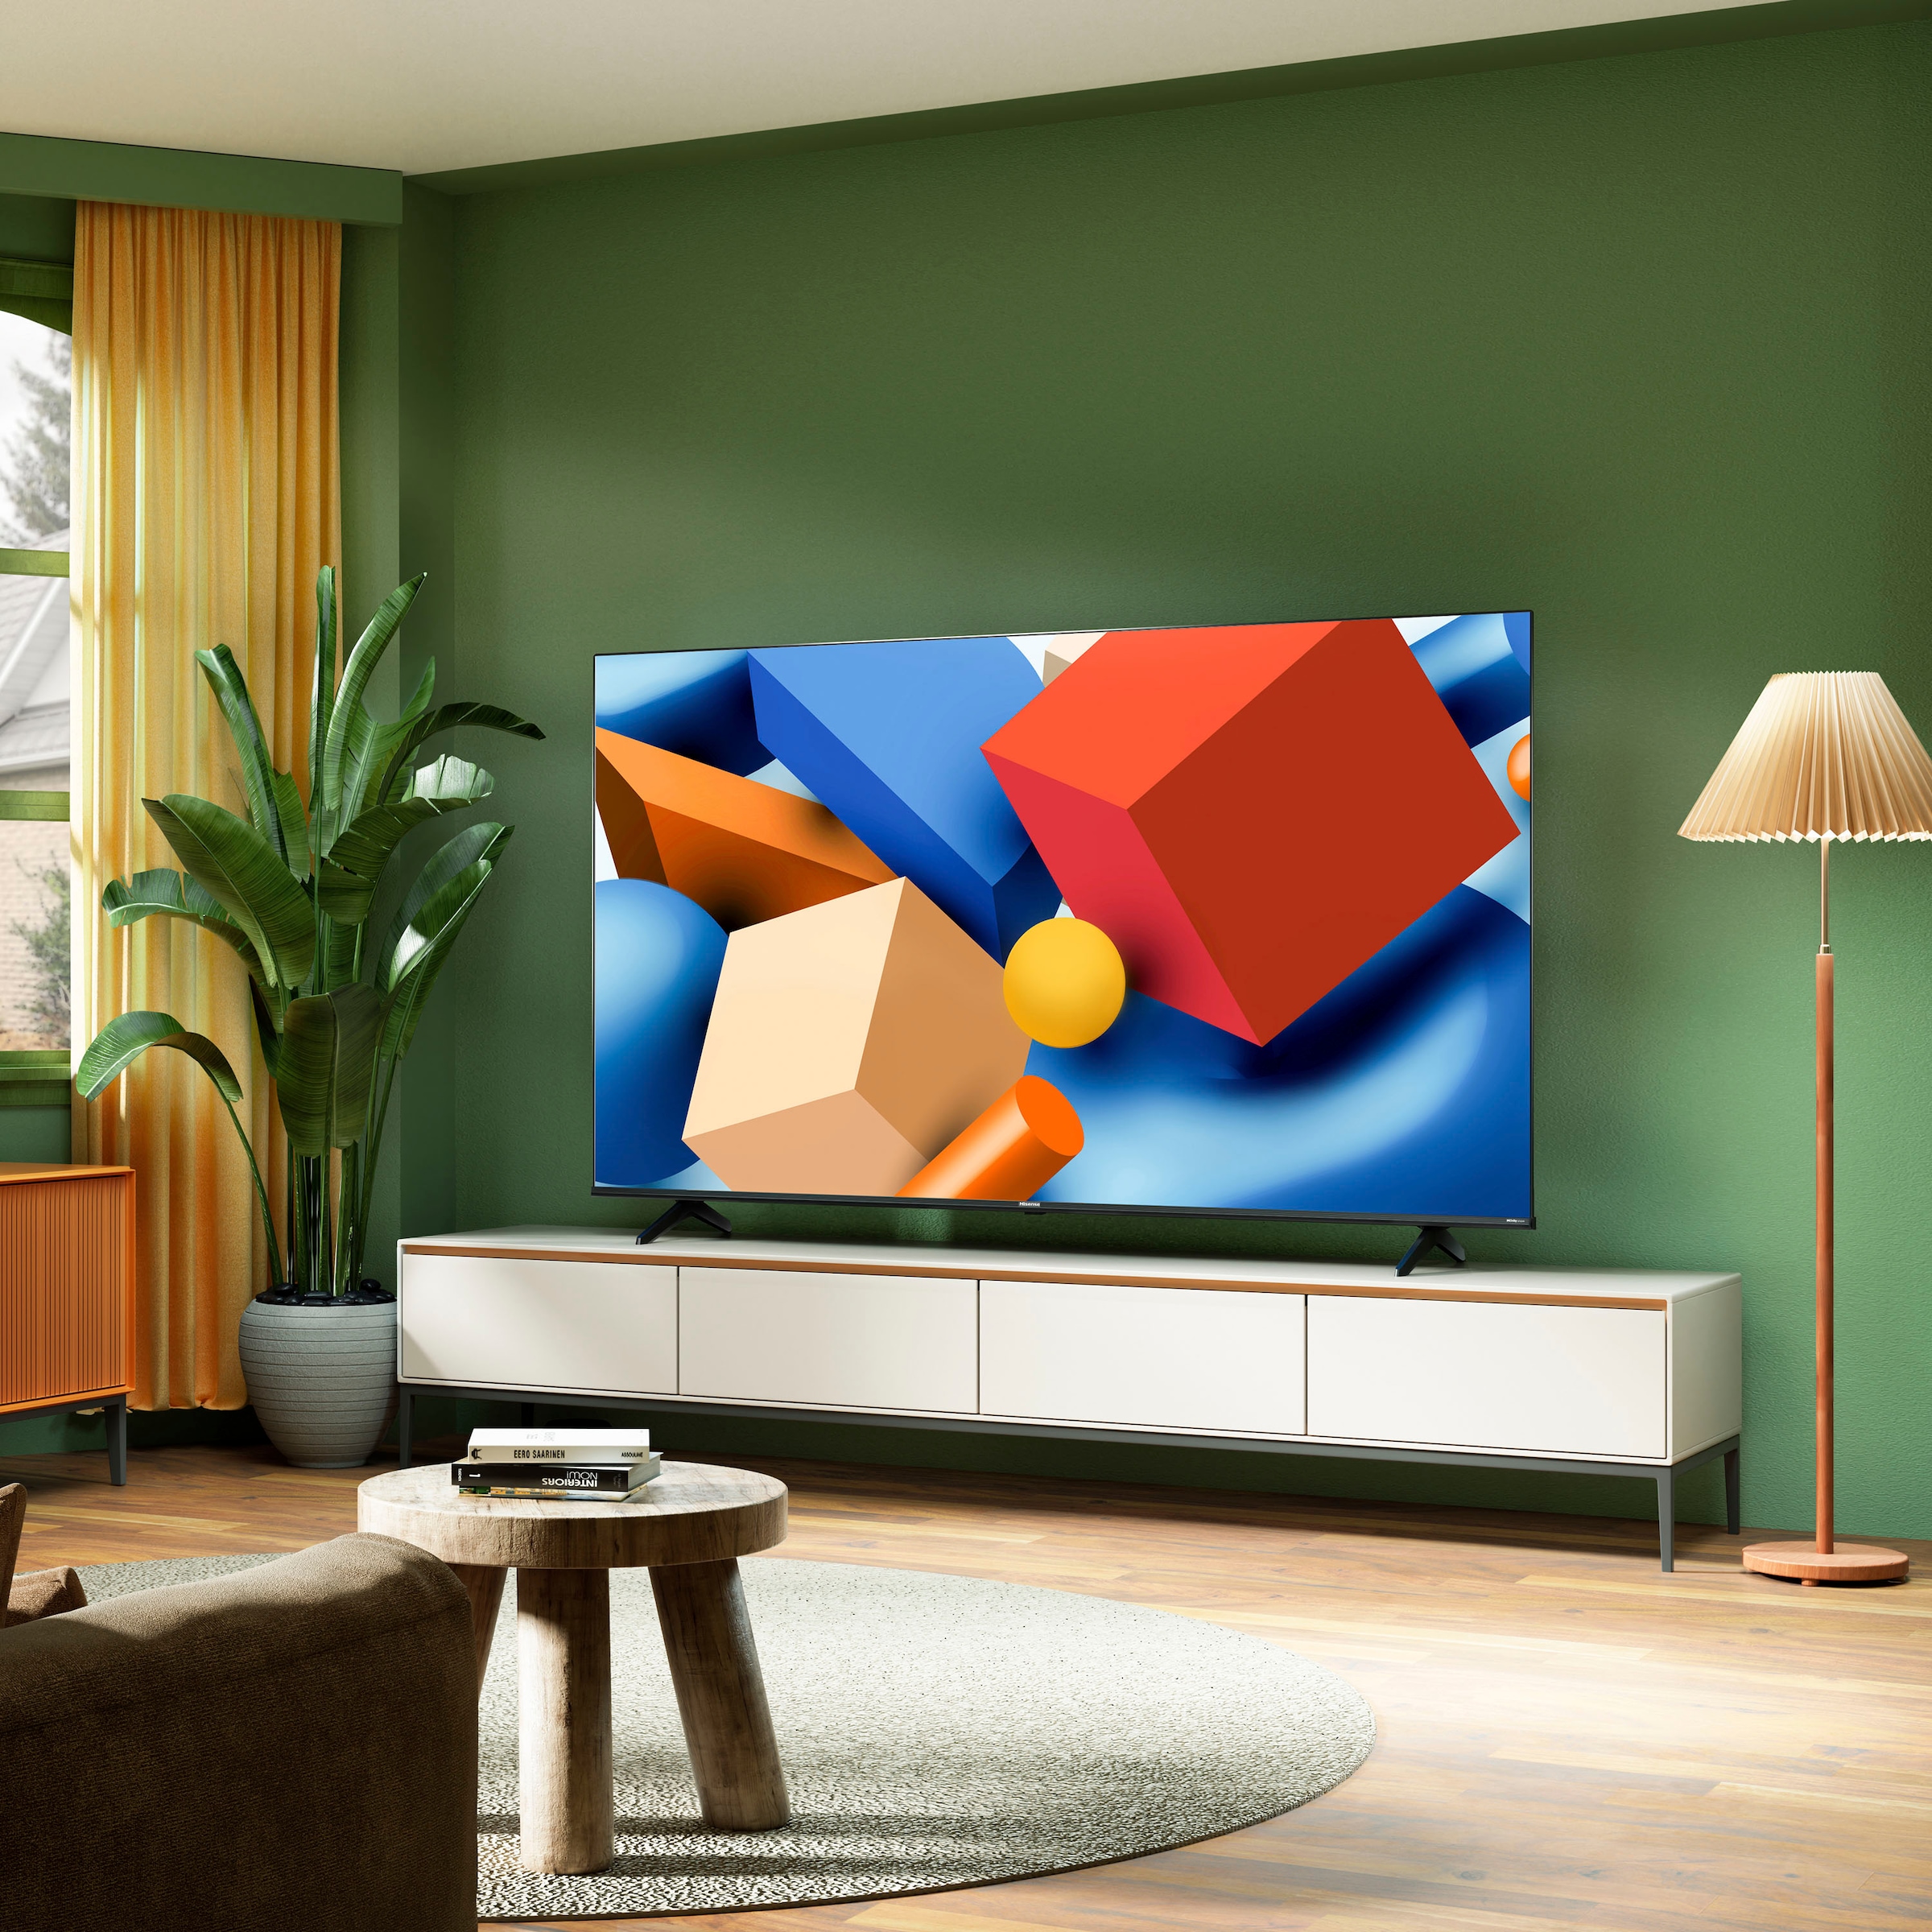 Hisense LED-Fernseher »58E61KT«, 146 cm/58 Zoll, 4K Ultra HD, Smart-TV, Smart-TV, Dolby Vision, Triple Tuner DVB-C/S/S2/T/T2